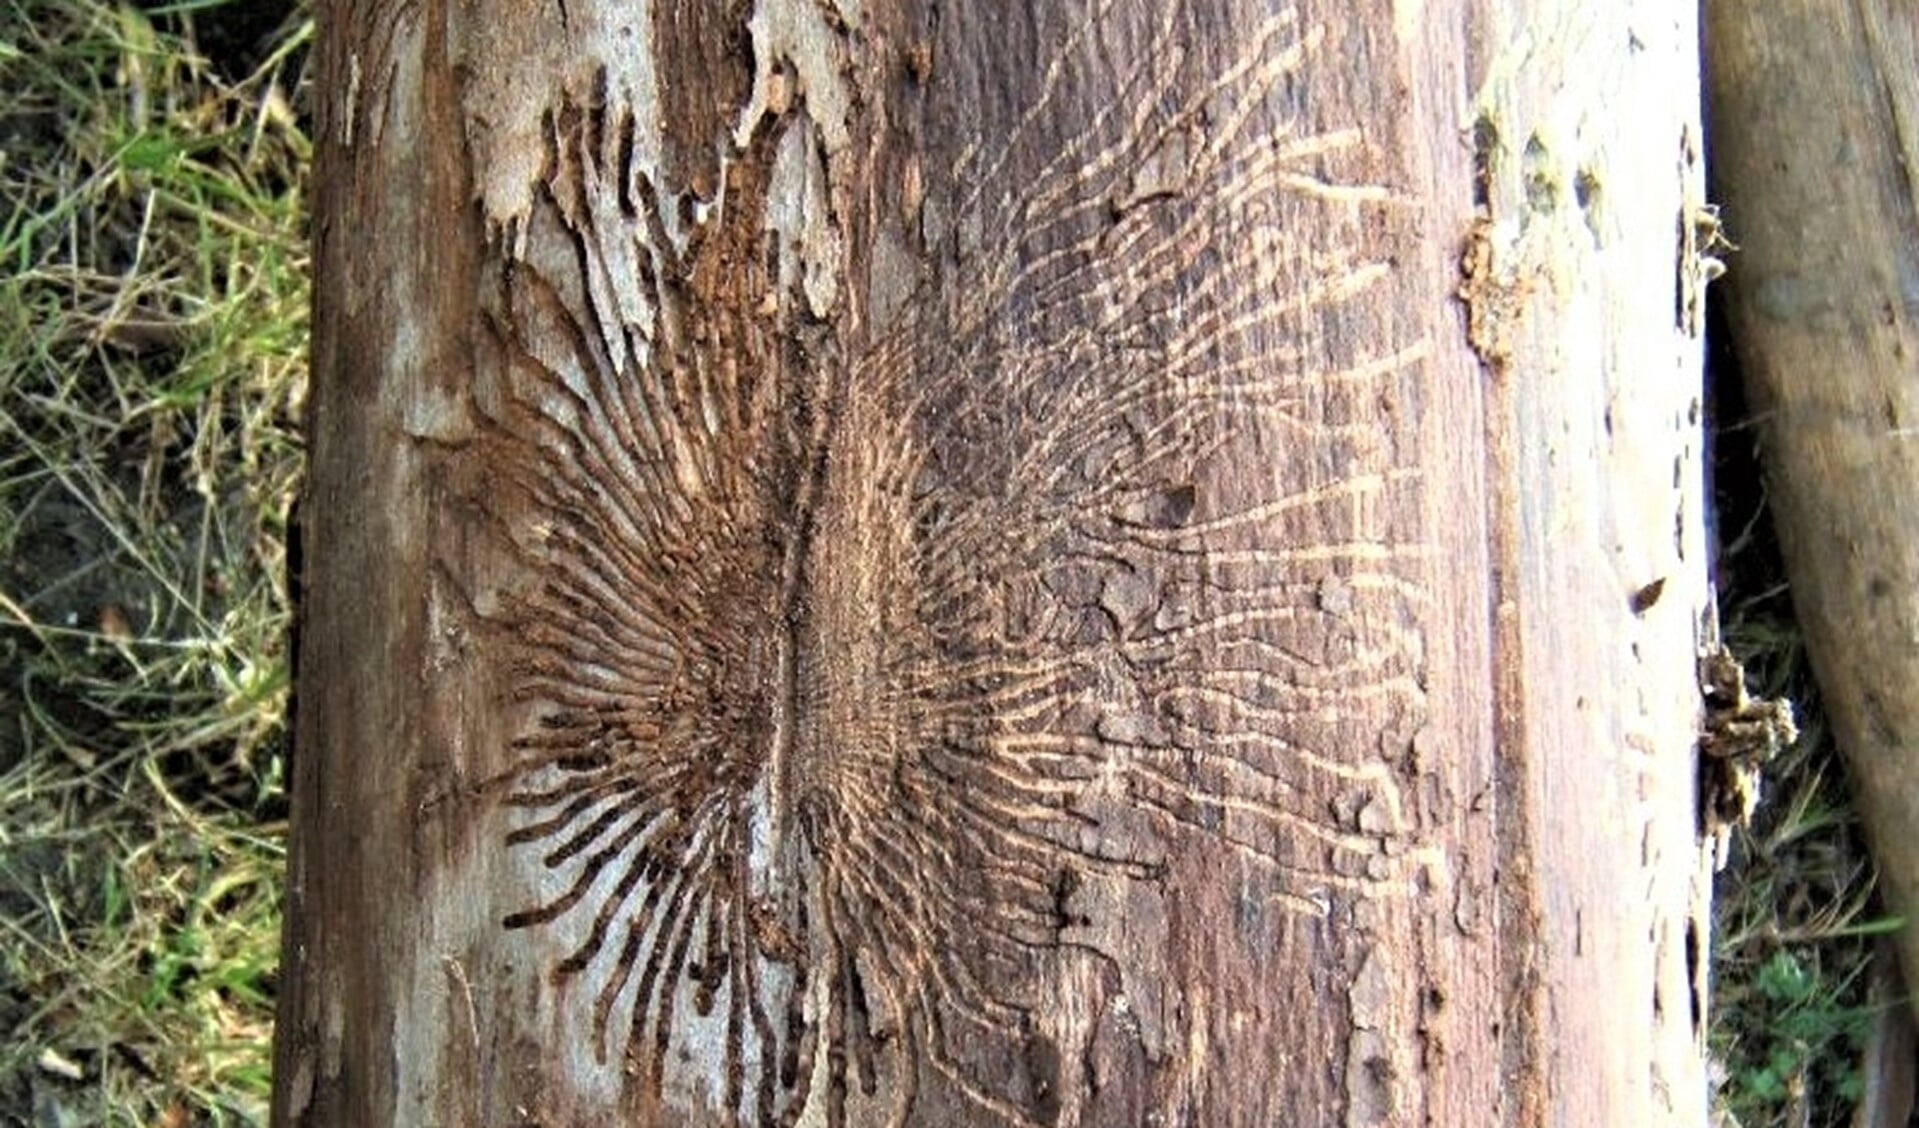 Gangen van larven van de iepenspintkever in een aangetaste boom (foto: Groenadviescentrum).